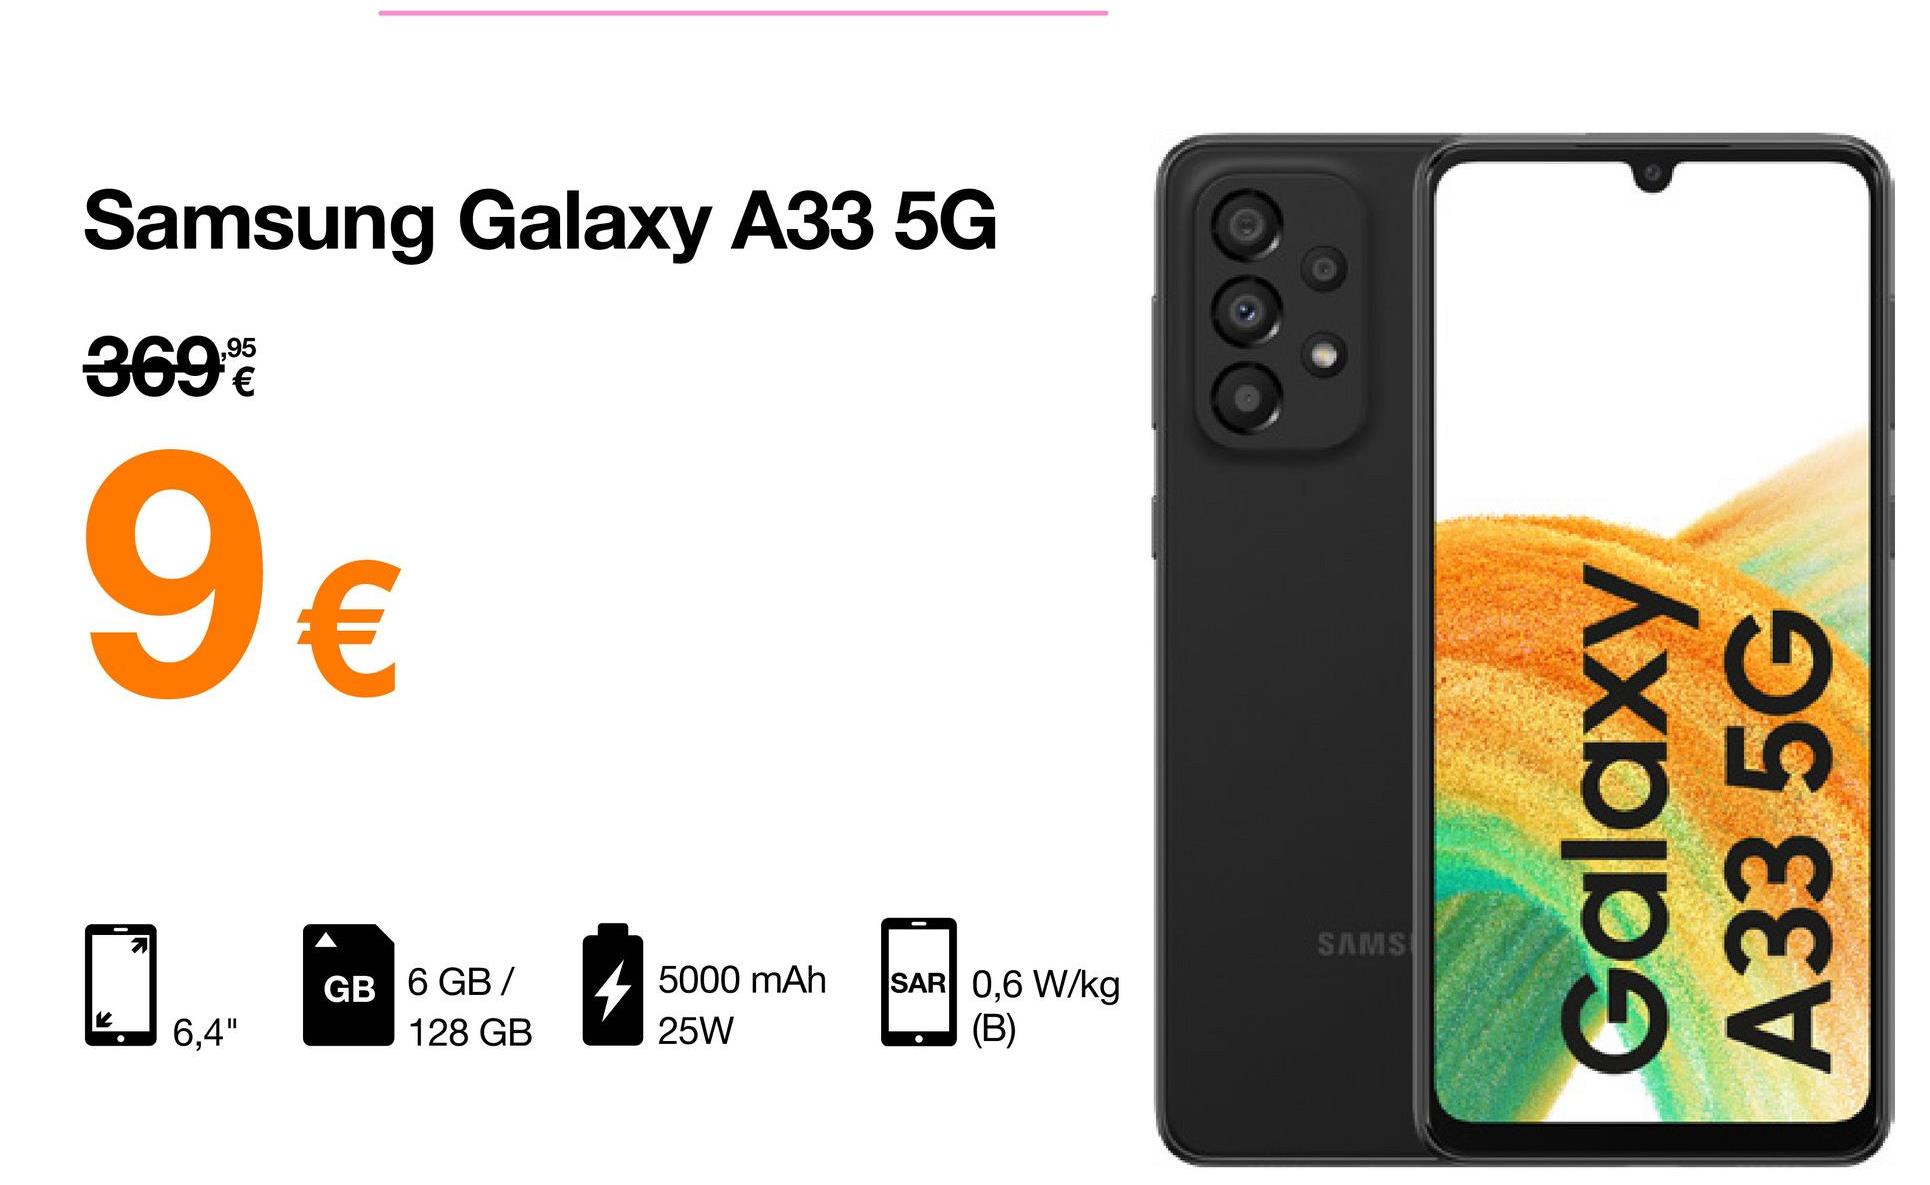 Samsung Galaxy A33 5G
3699
9€
5000 mAh
25W
6,4"
GB 6 GB/
128 GB
SAR 0,6 W/kg
(B)
SAMS
Galaxy
A33 5G